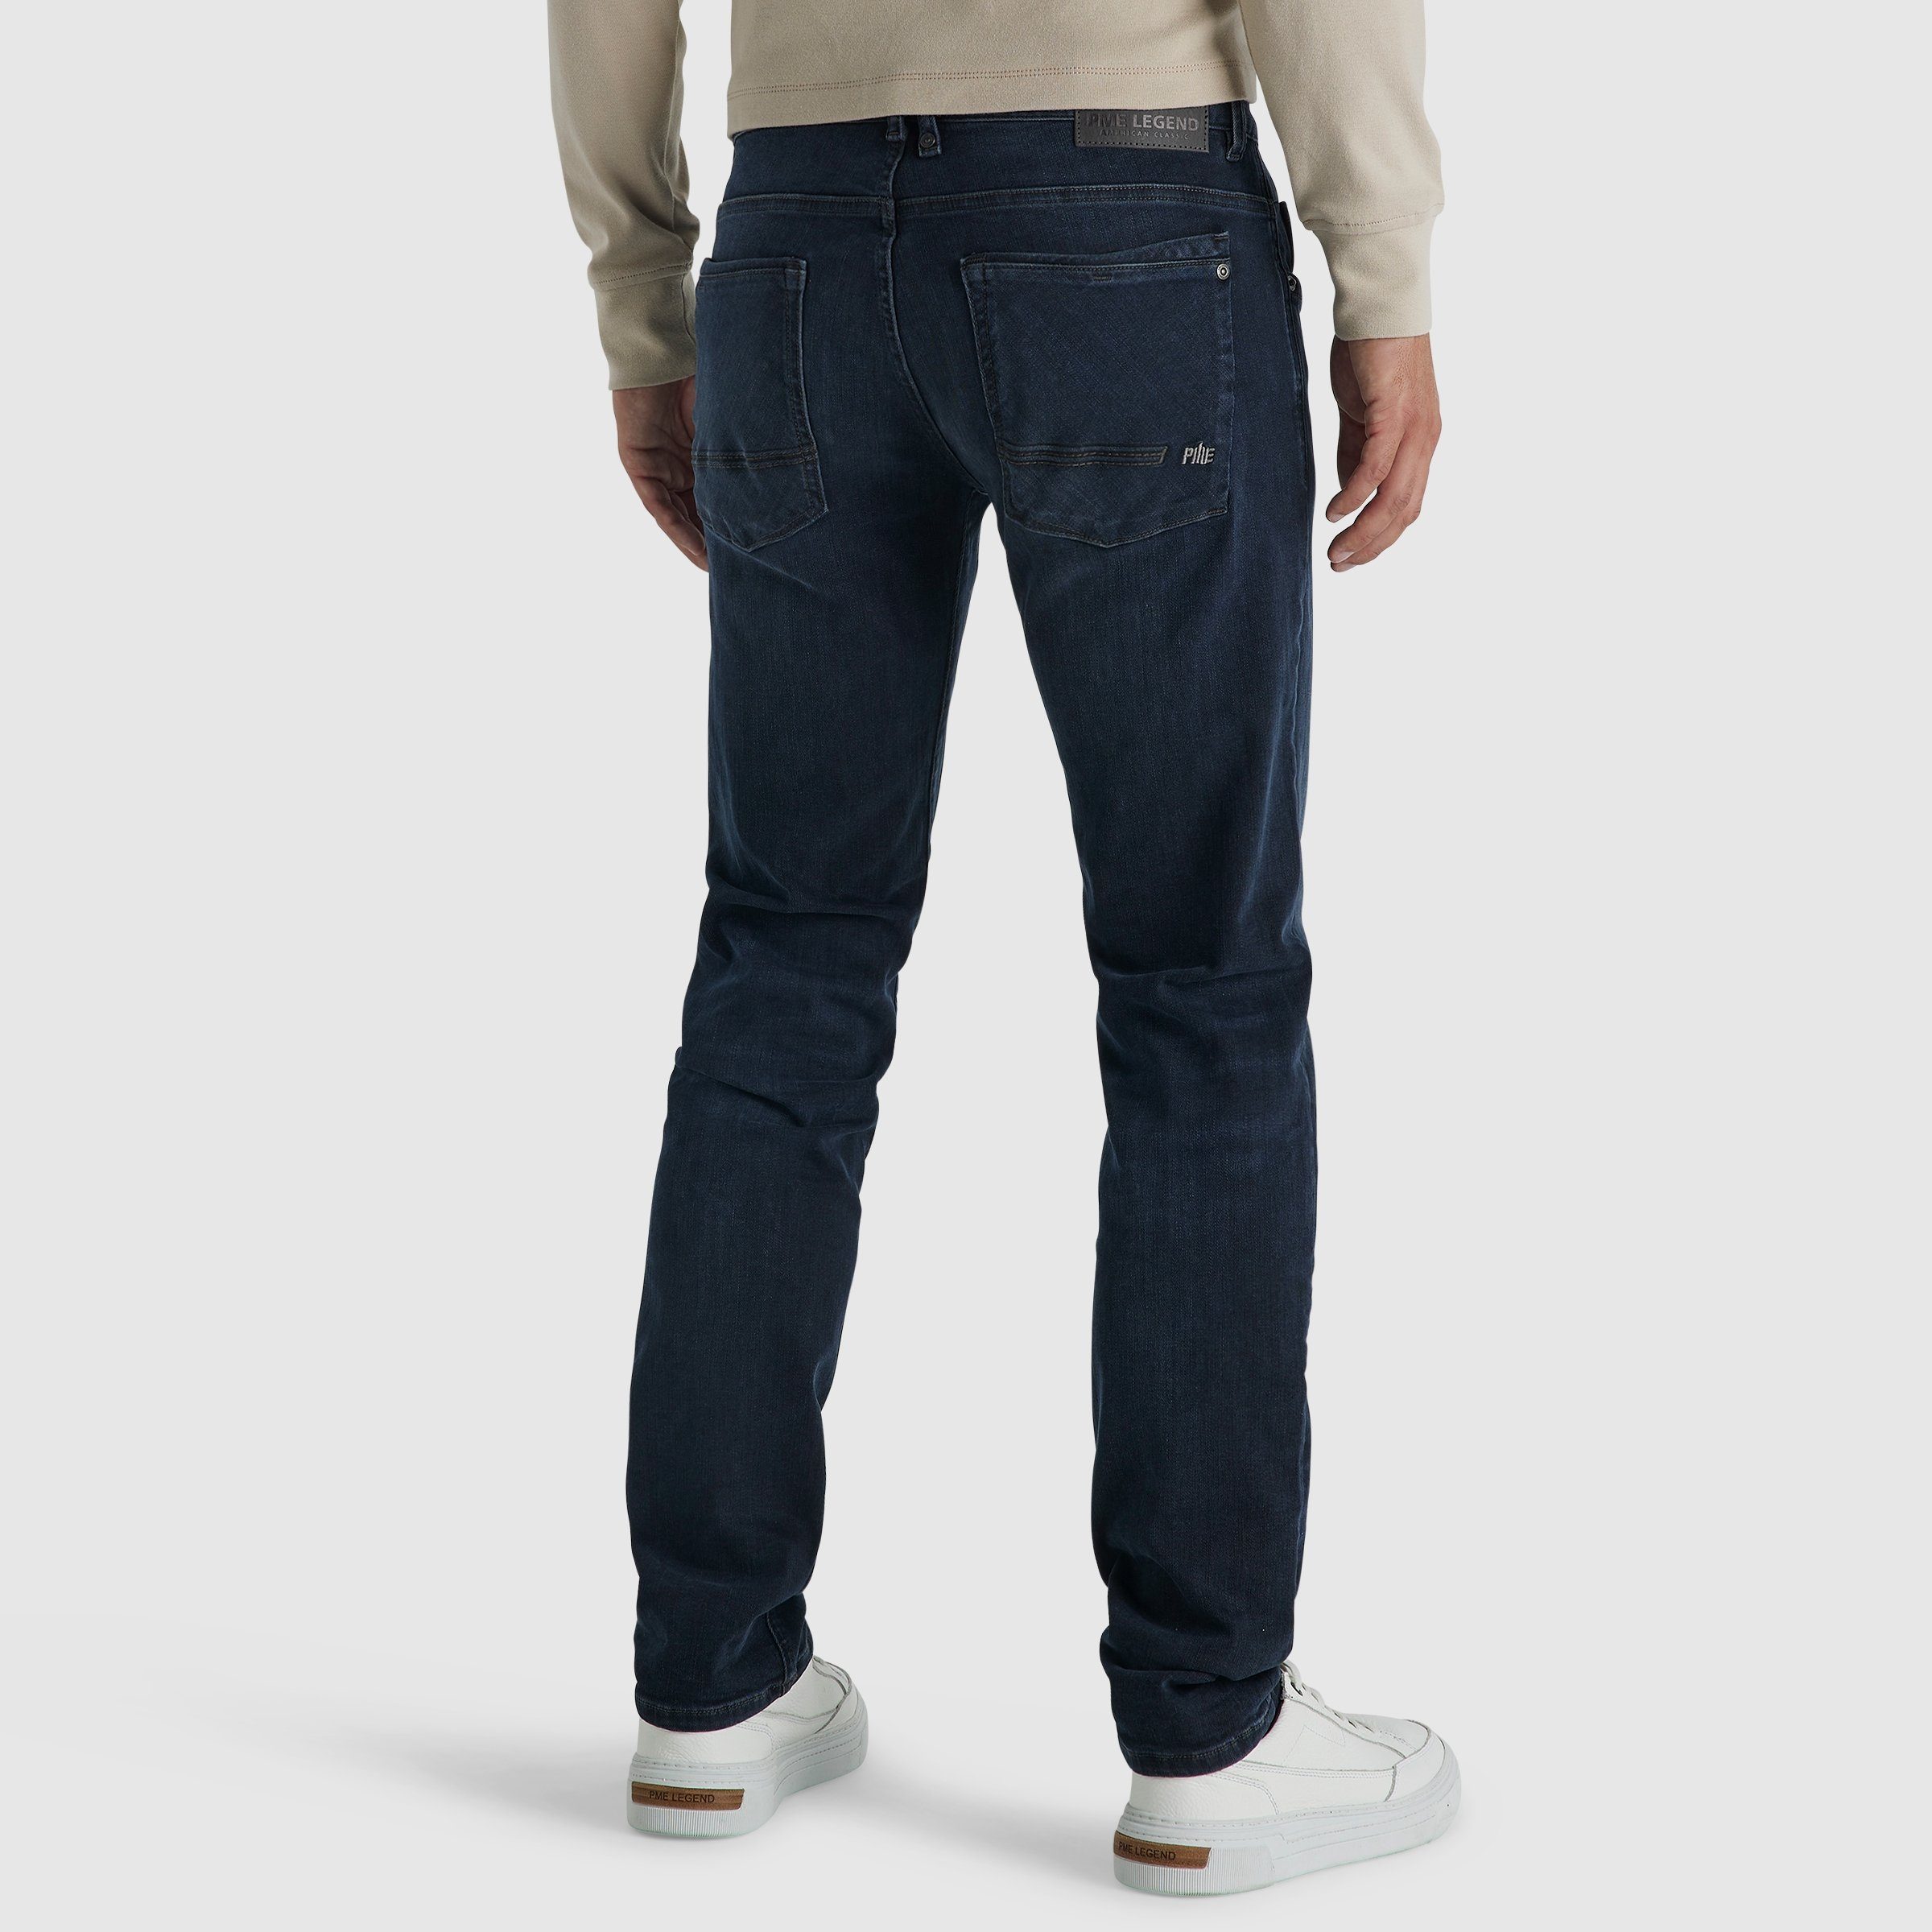 PME LEGEND 3.0 PME PTR180-CBB blue LEGEND comfort black COMMANDER 5-Pocket-Jeans